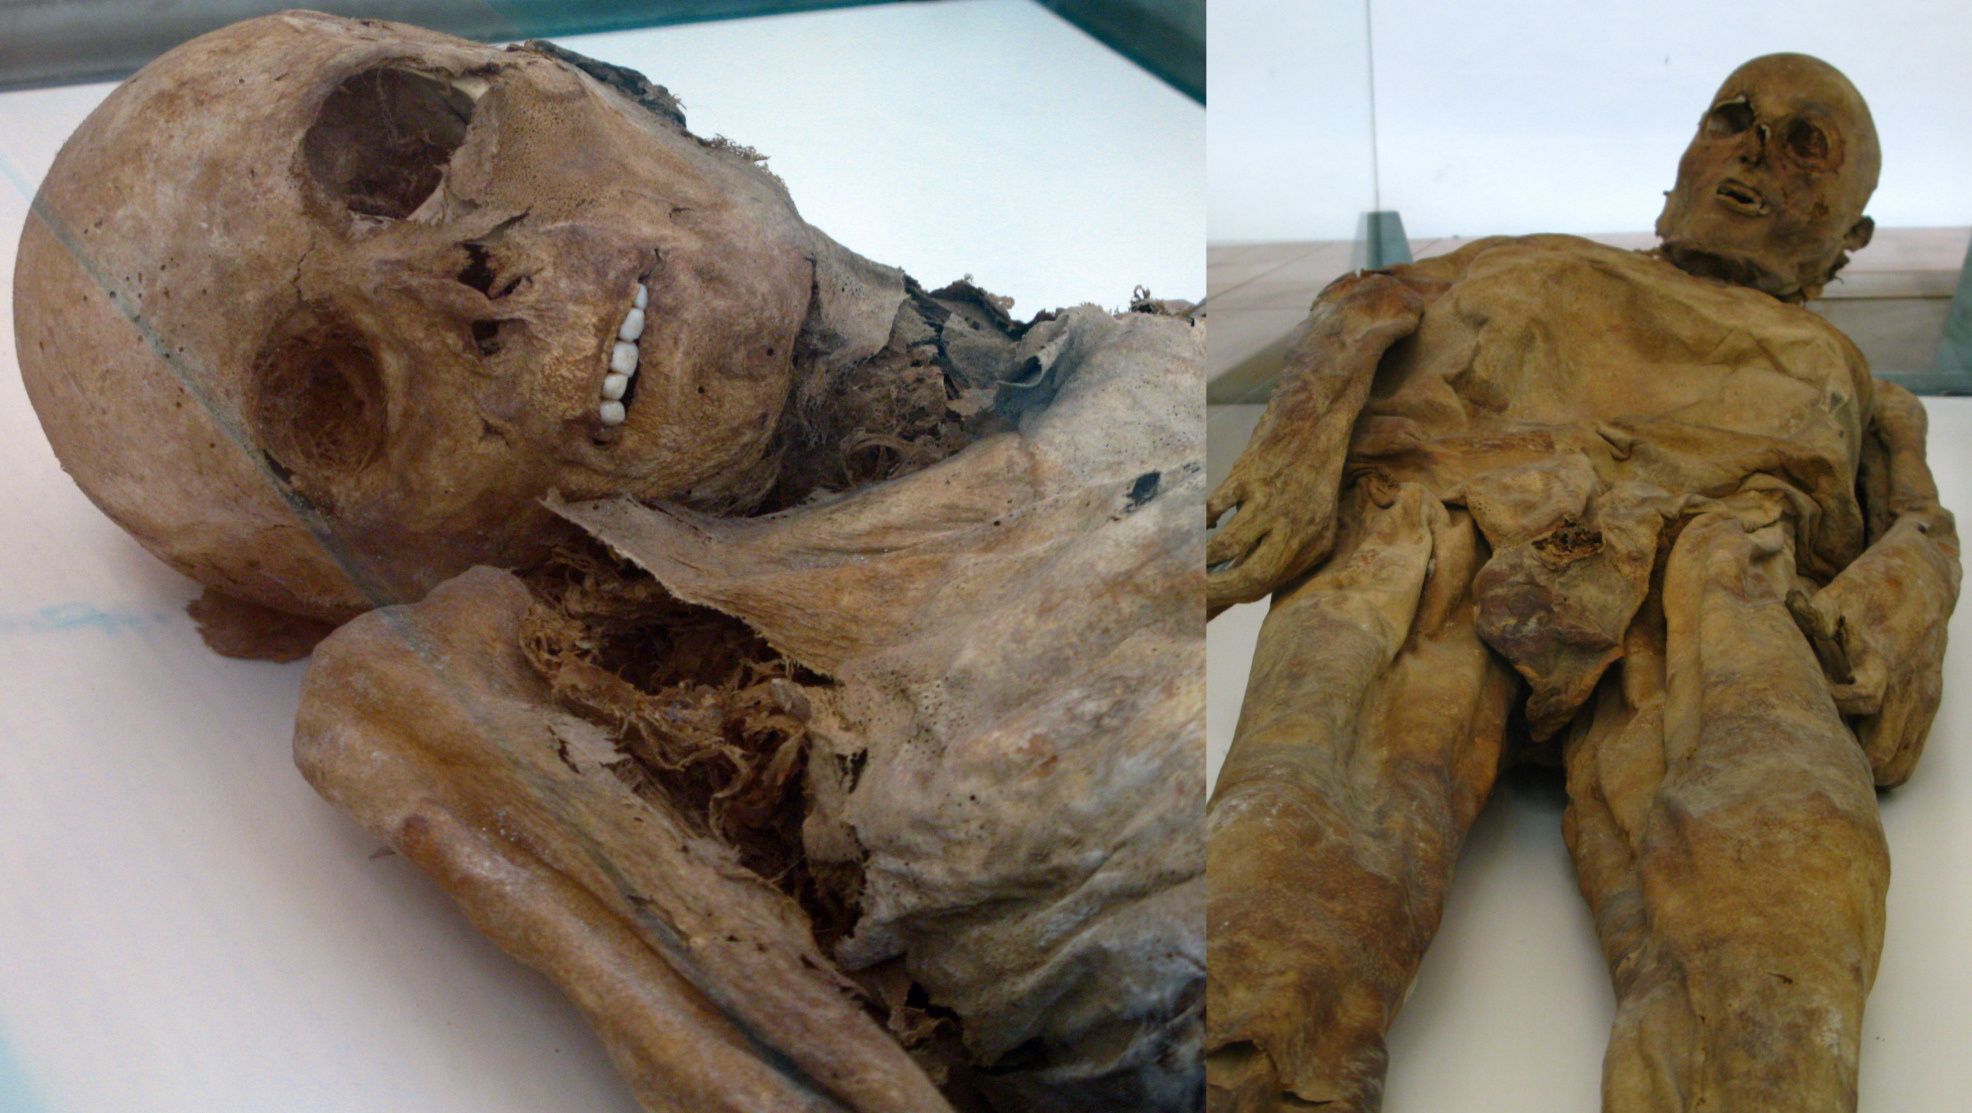 Dos de las momias de Venzone espeluznantemente conservadas. Con una descomposición normal, los dientes tienden a caerse varias semanas después de la muerte.